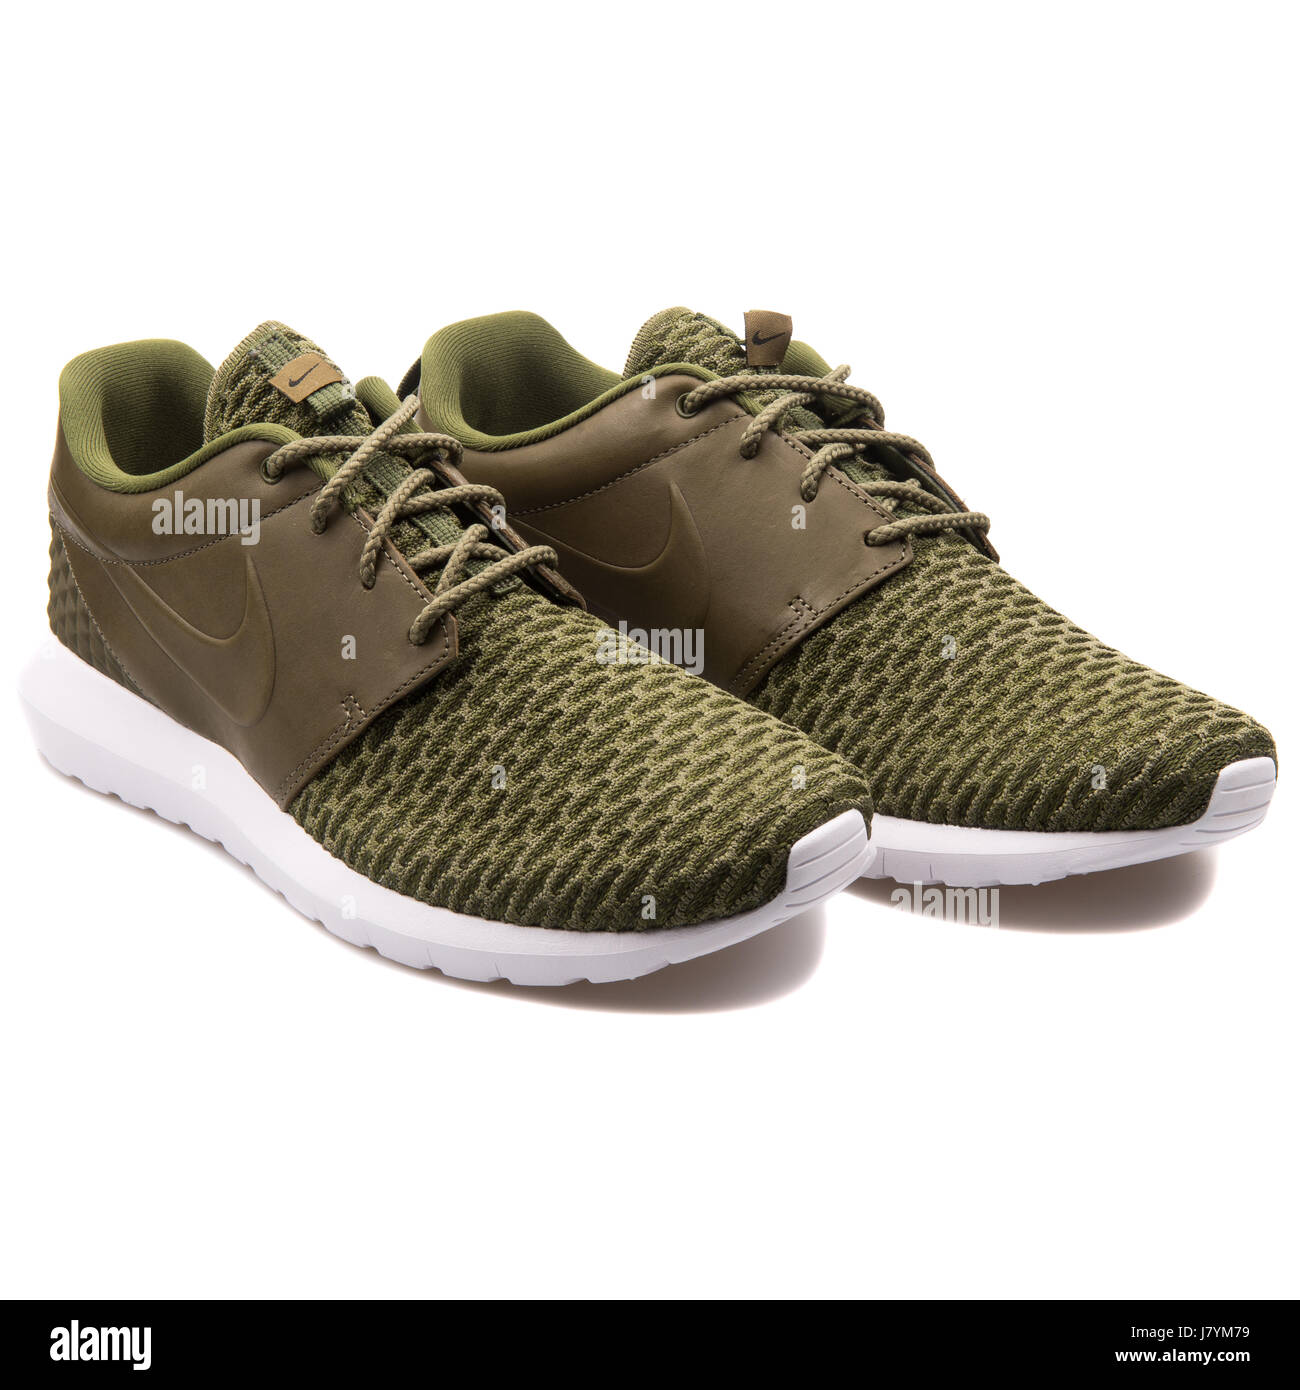 Nike Roshe NM Flyknit PRM grün Herren Running Sneakers - 746825-300  Stockfotografie - Alamy